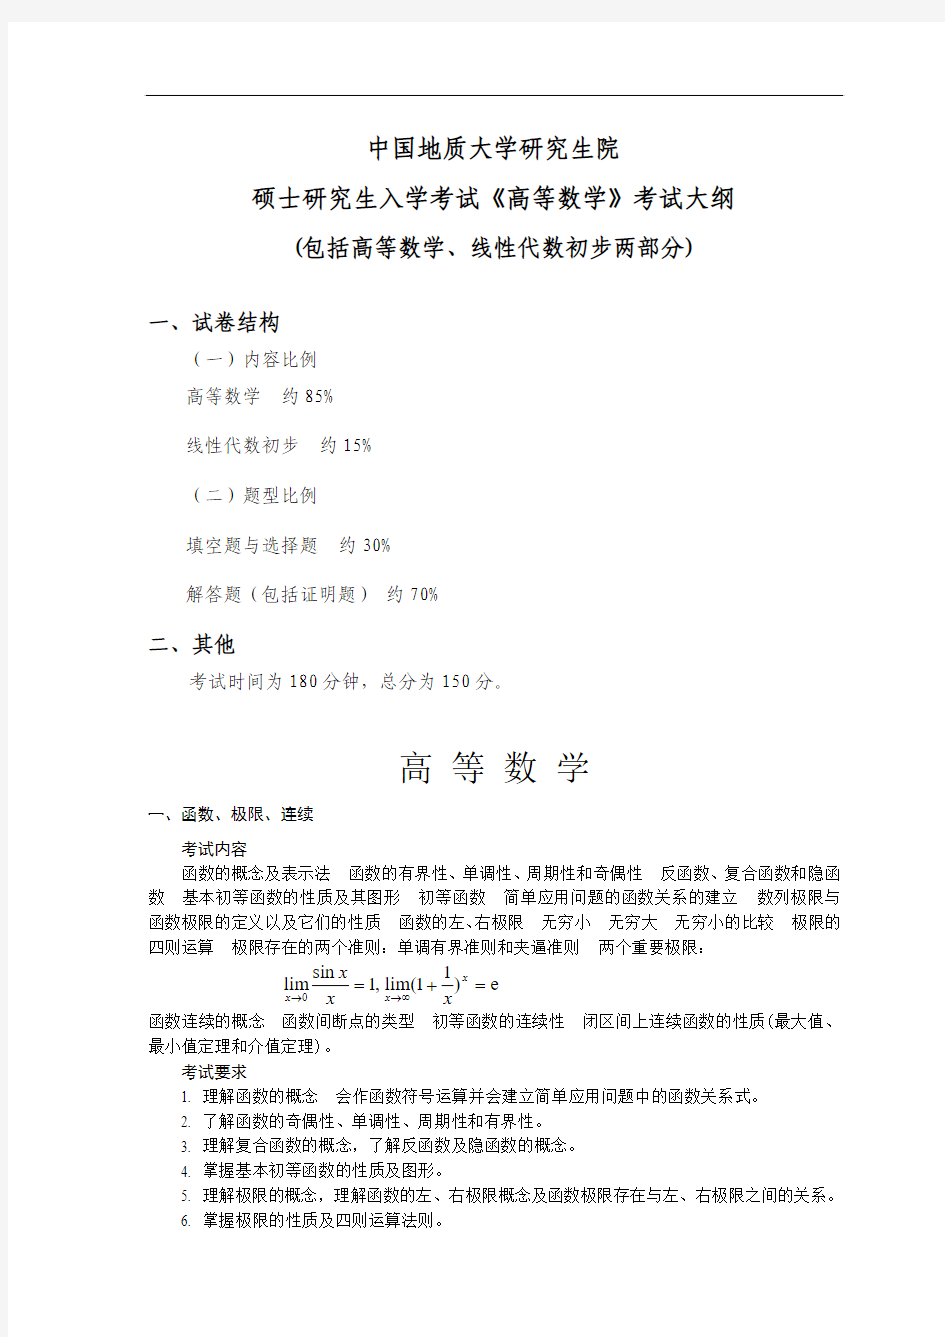 中国地质大学610 高等数学 研究生入学考试大纲(公共课程考试用)